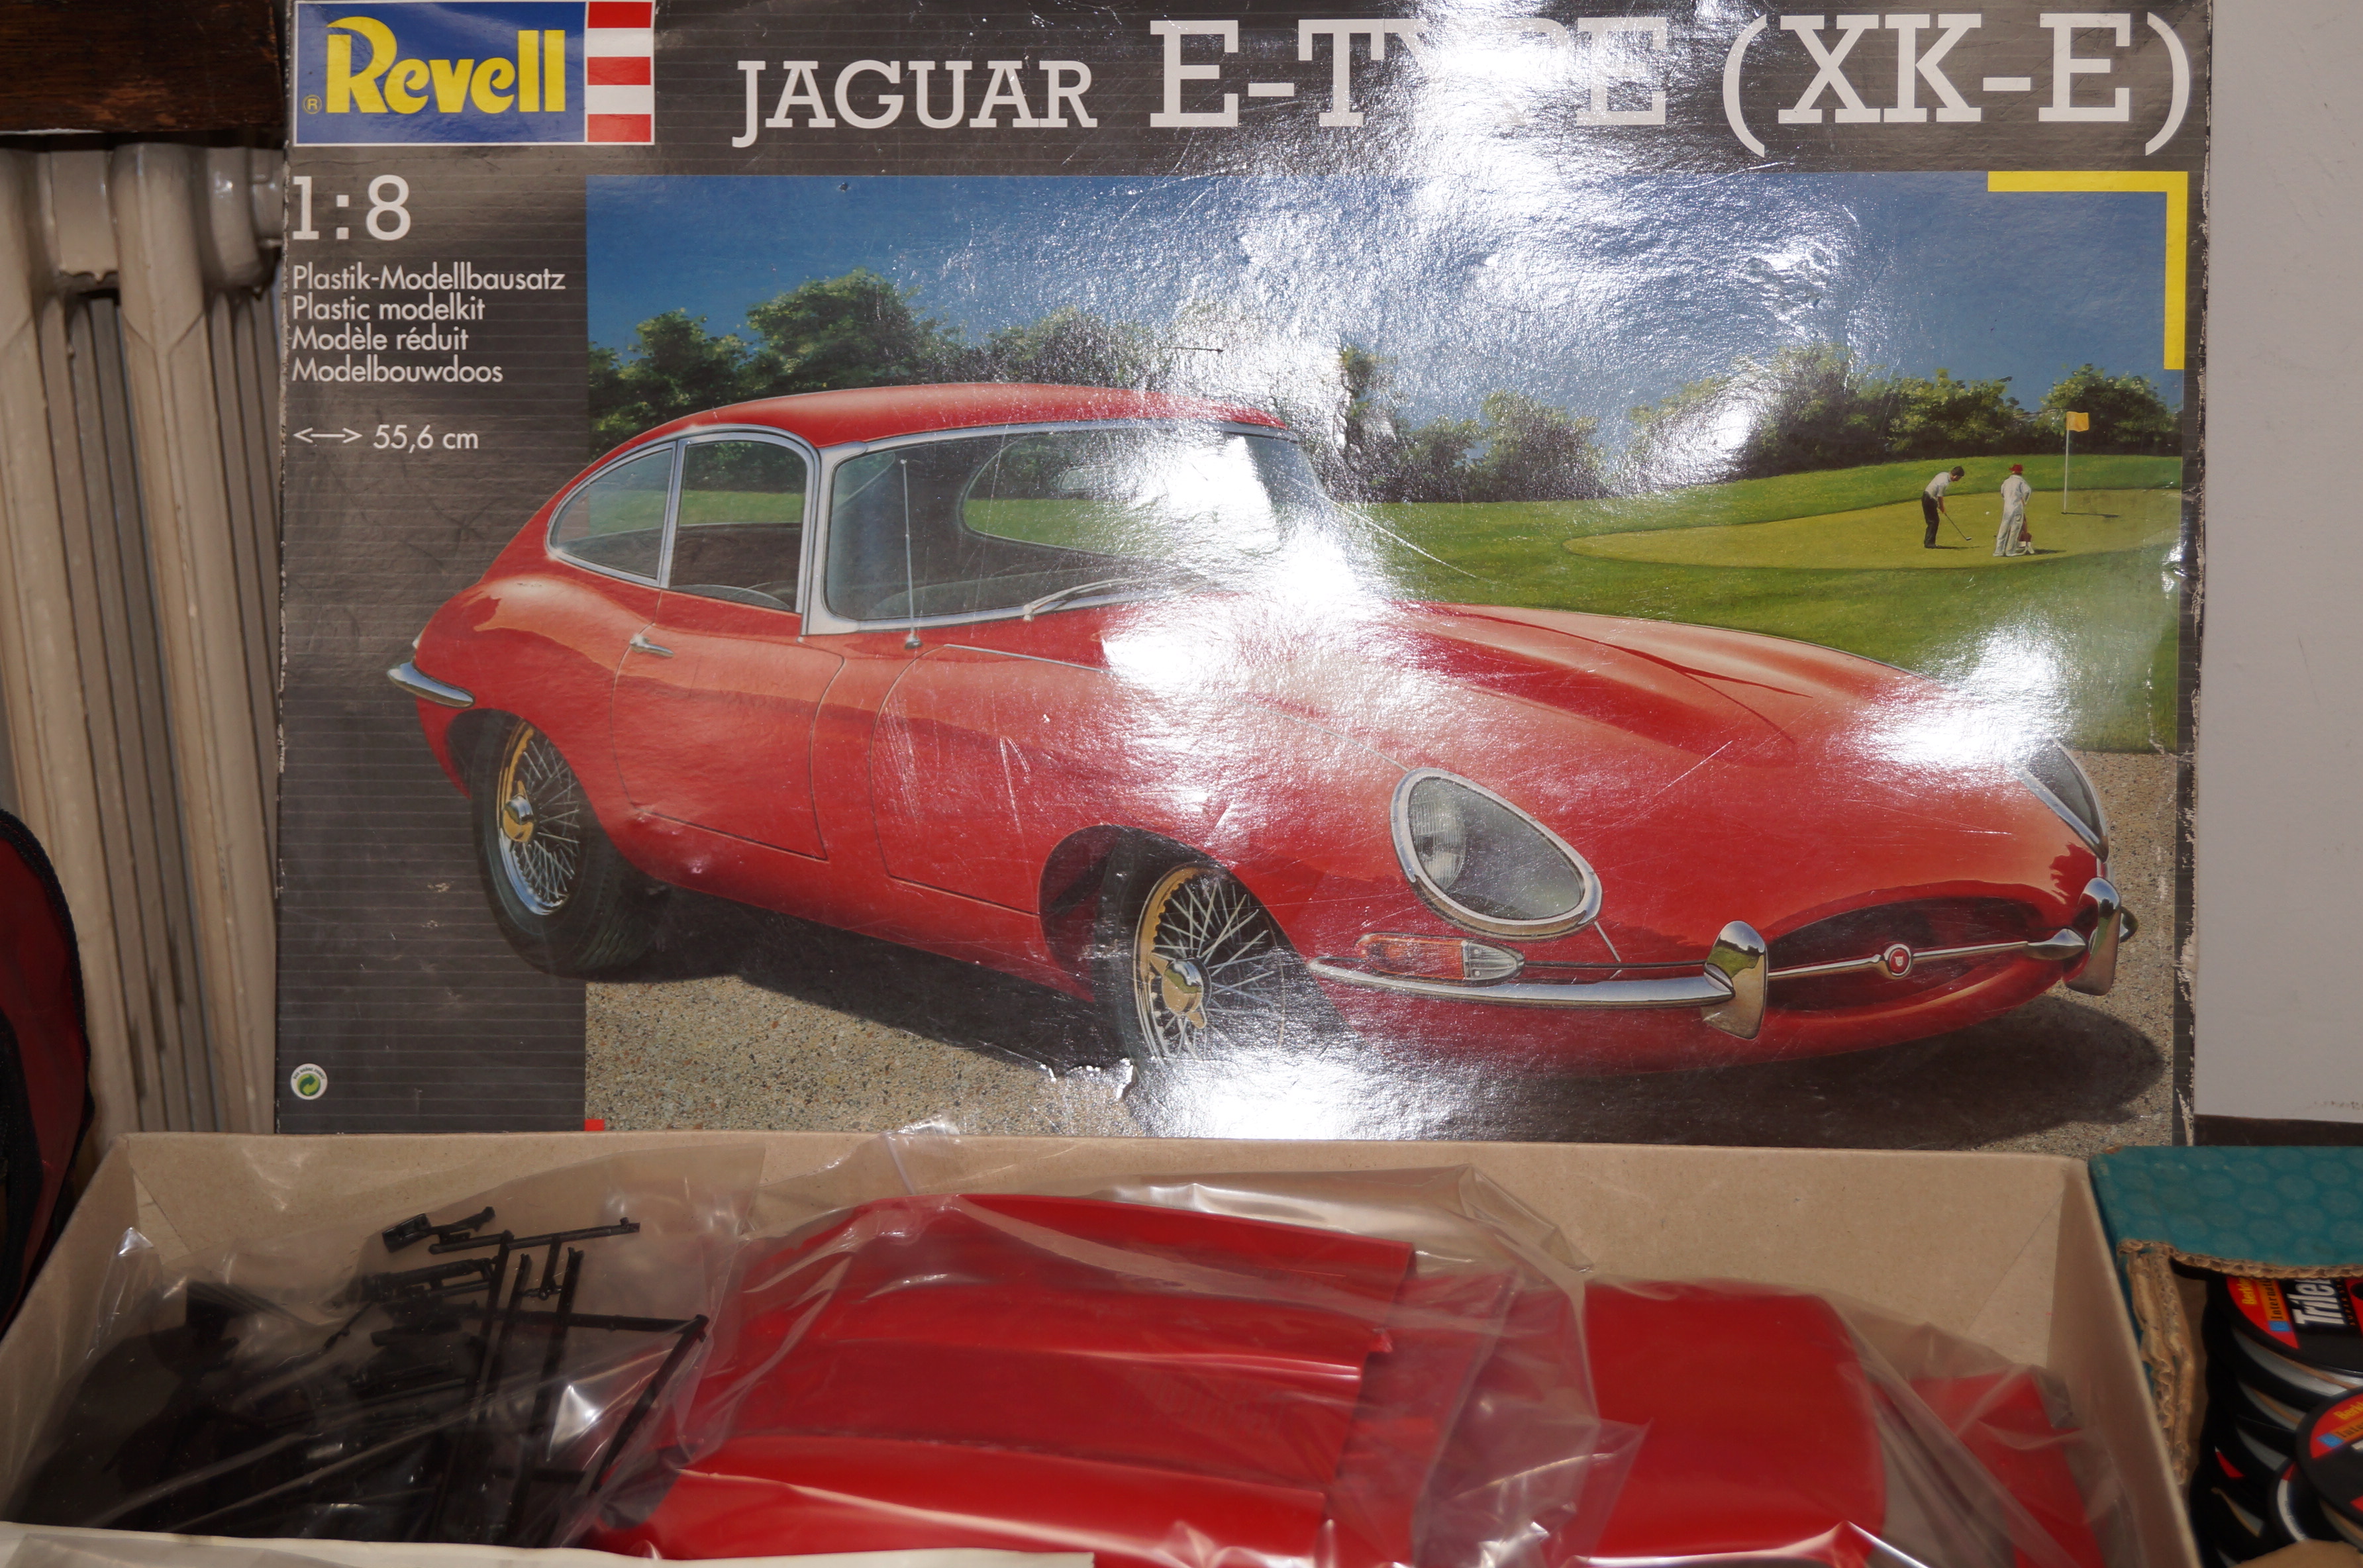 Revell 1:8 model of a Jaguar E Type (for assembly)